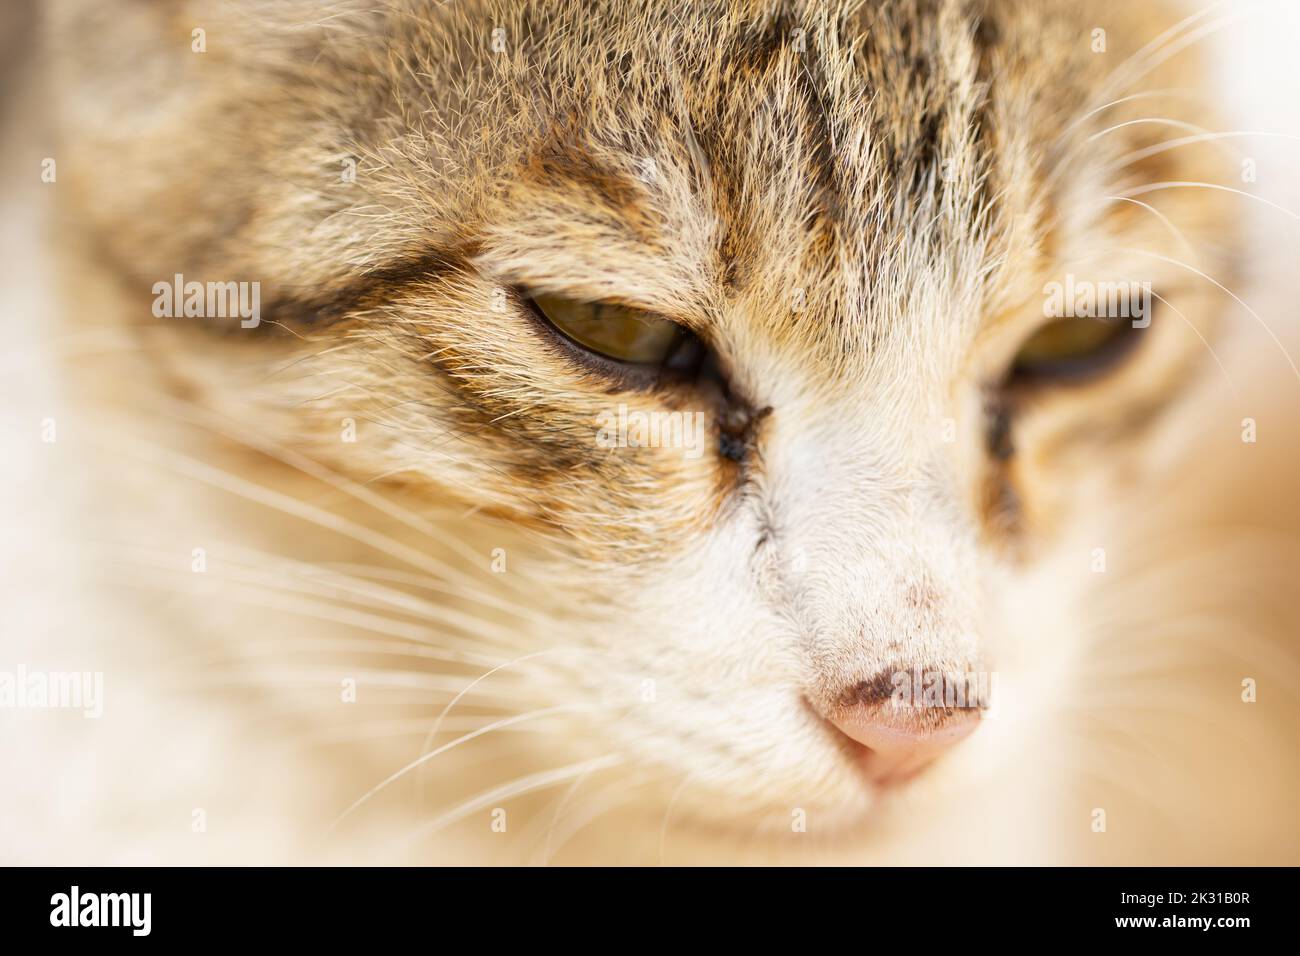 Ein extrem nahes Porträt einer Katze mit Augen, Nase und Schnurrbart Stockfoto